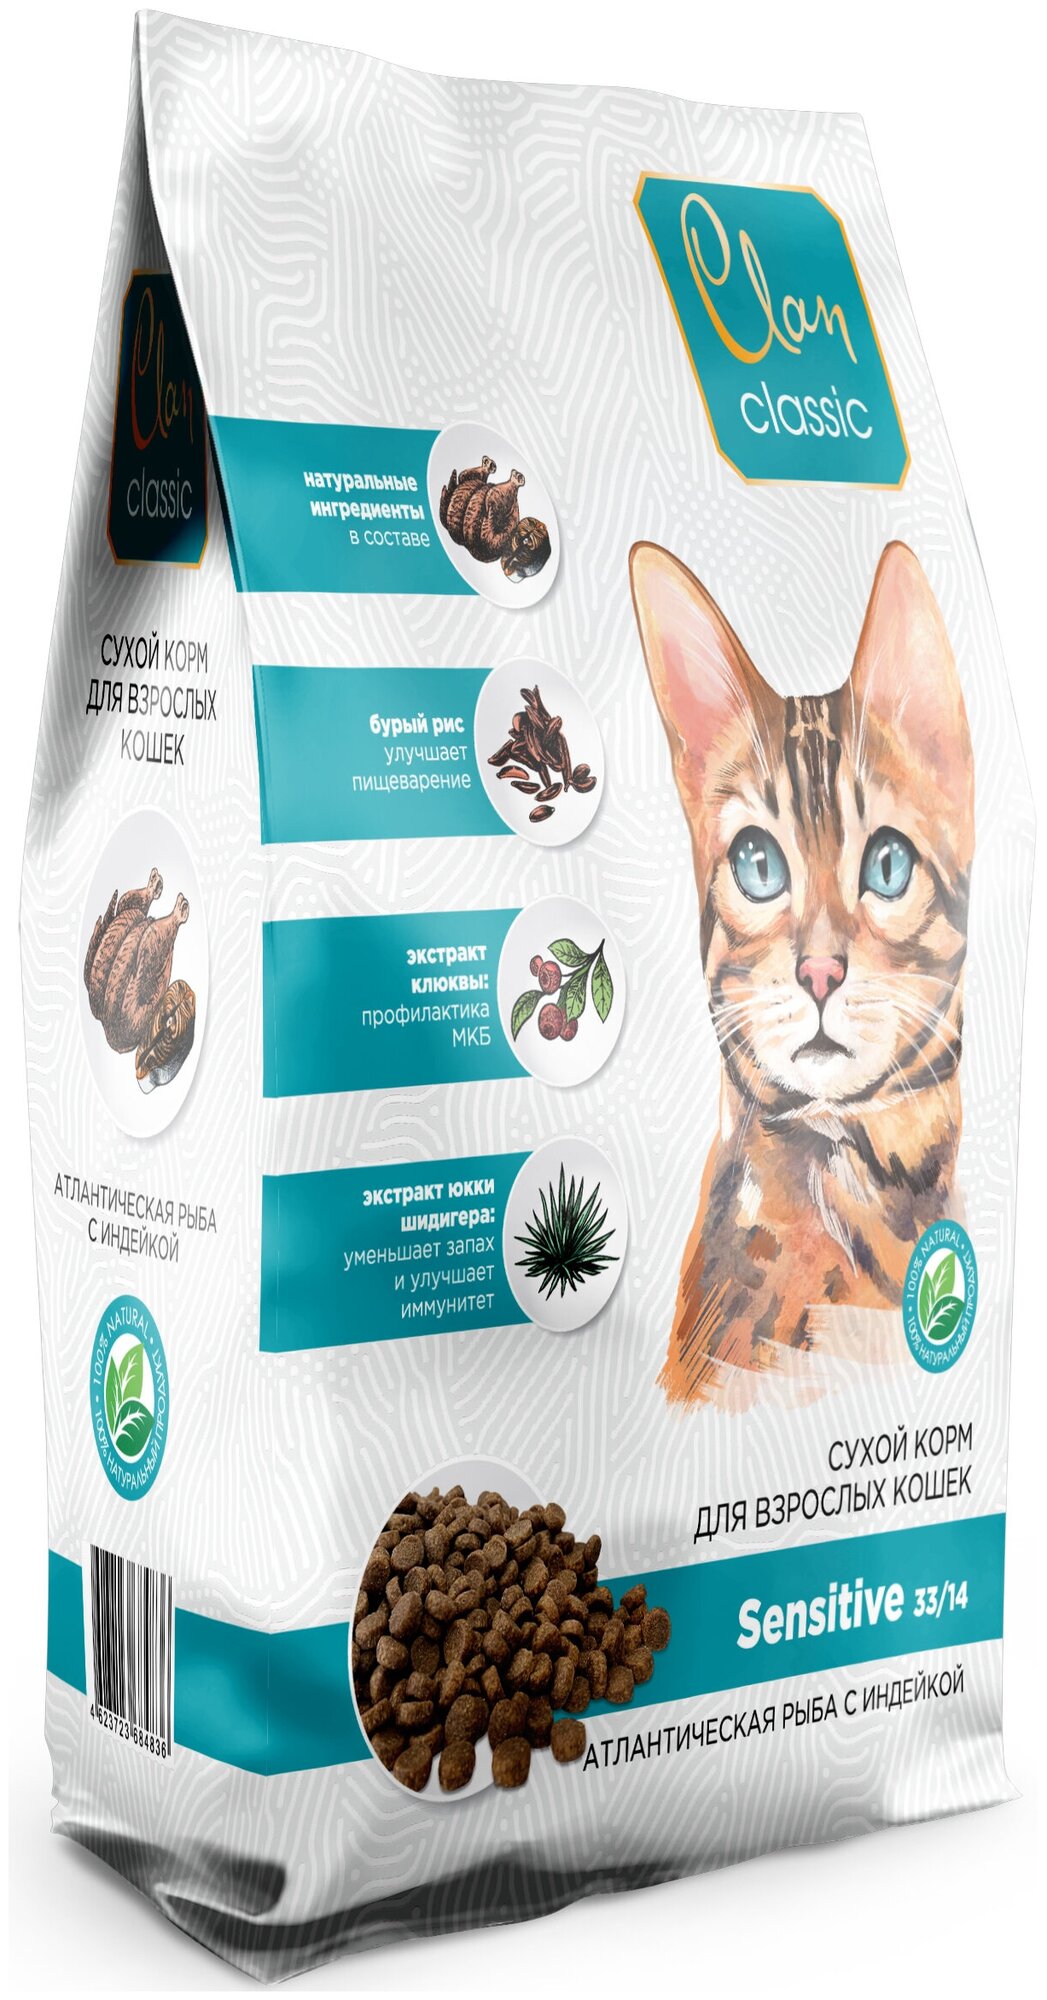 Корм Clan Classic Sensitive 33/14 для кошек с чувствительным пищеварением, с атлантической рыбой и индейкой, 10 кг